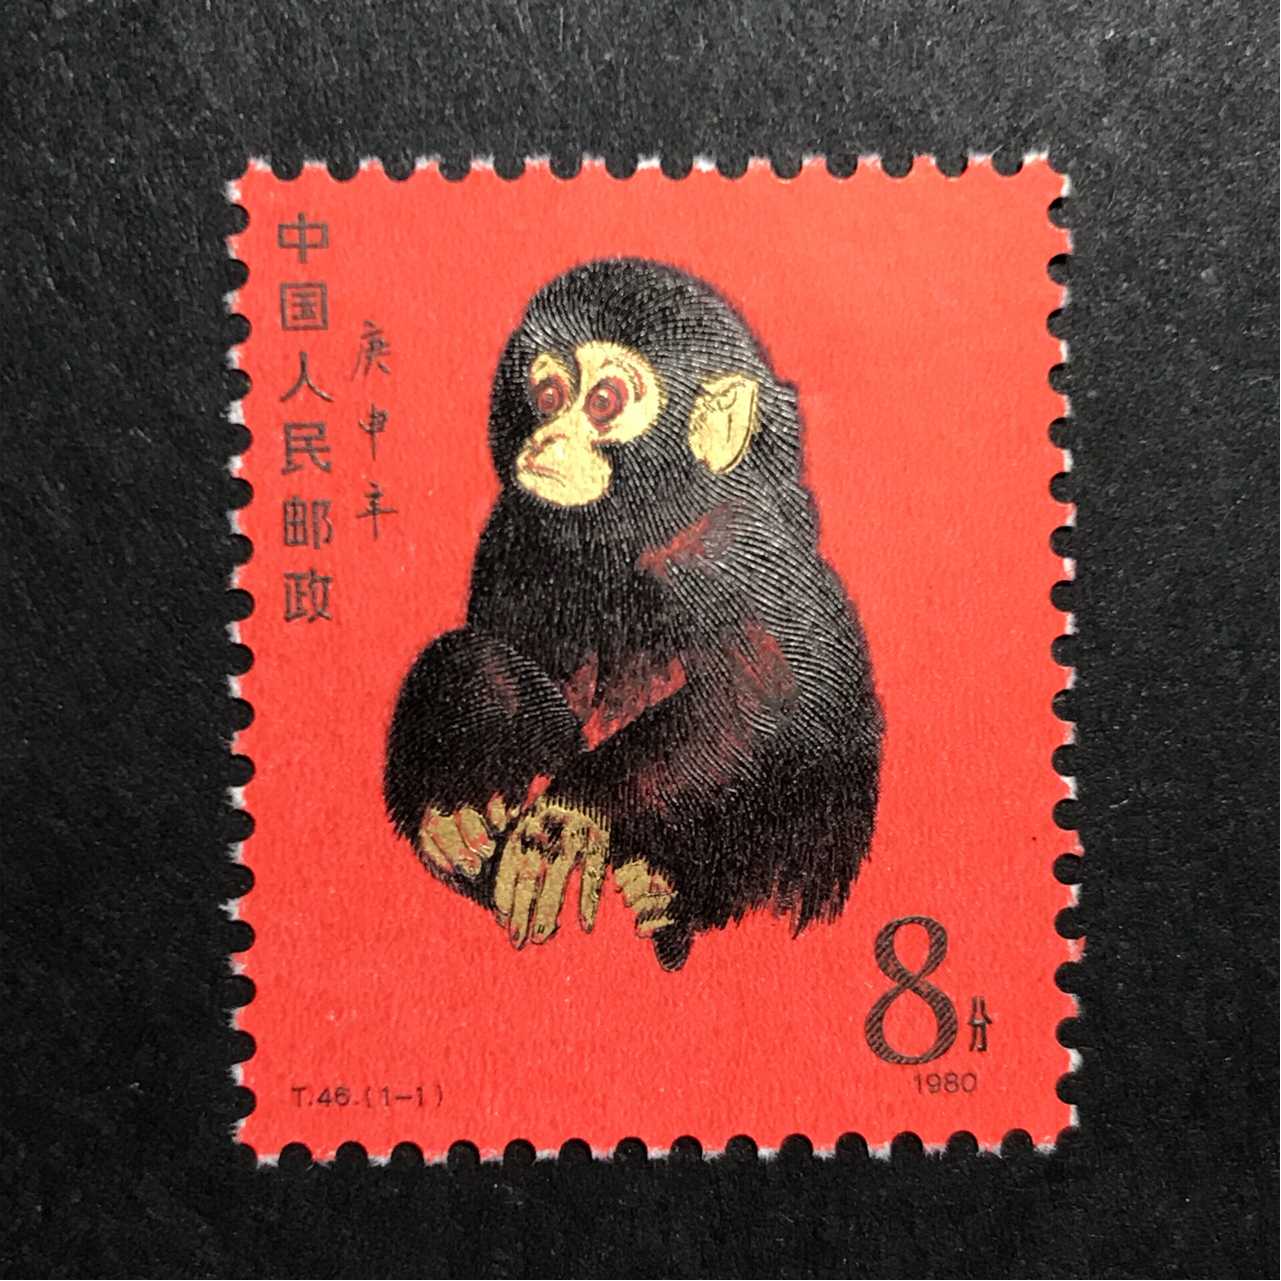 第一张猴年邮票图片